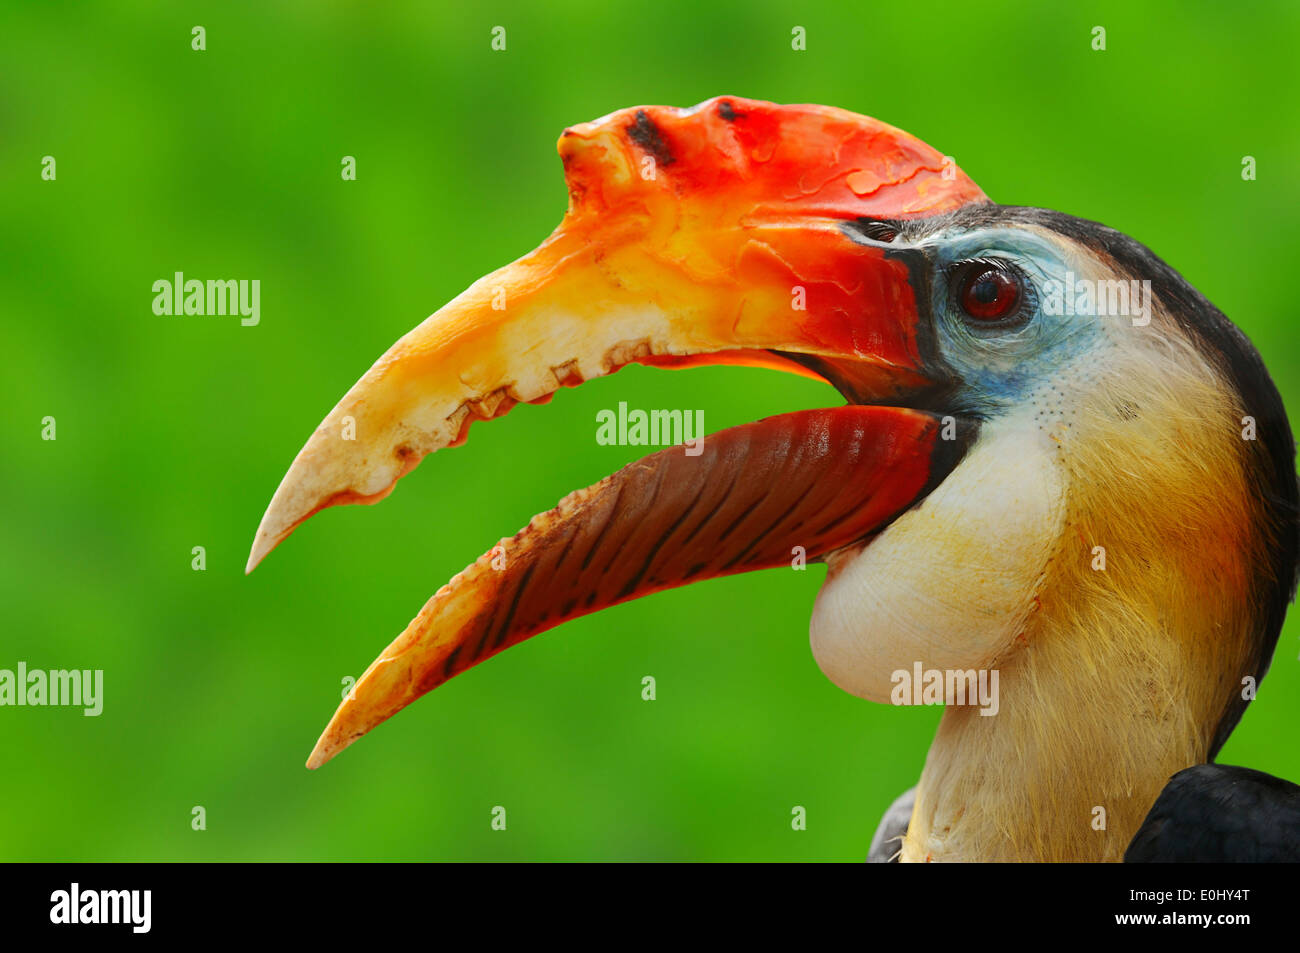 Wrinkled Hornbill or Sunda Wrinkled Hornbill (Aceros corrugatus), male Stock Photo